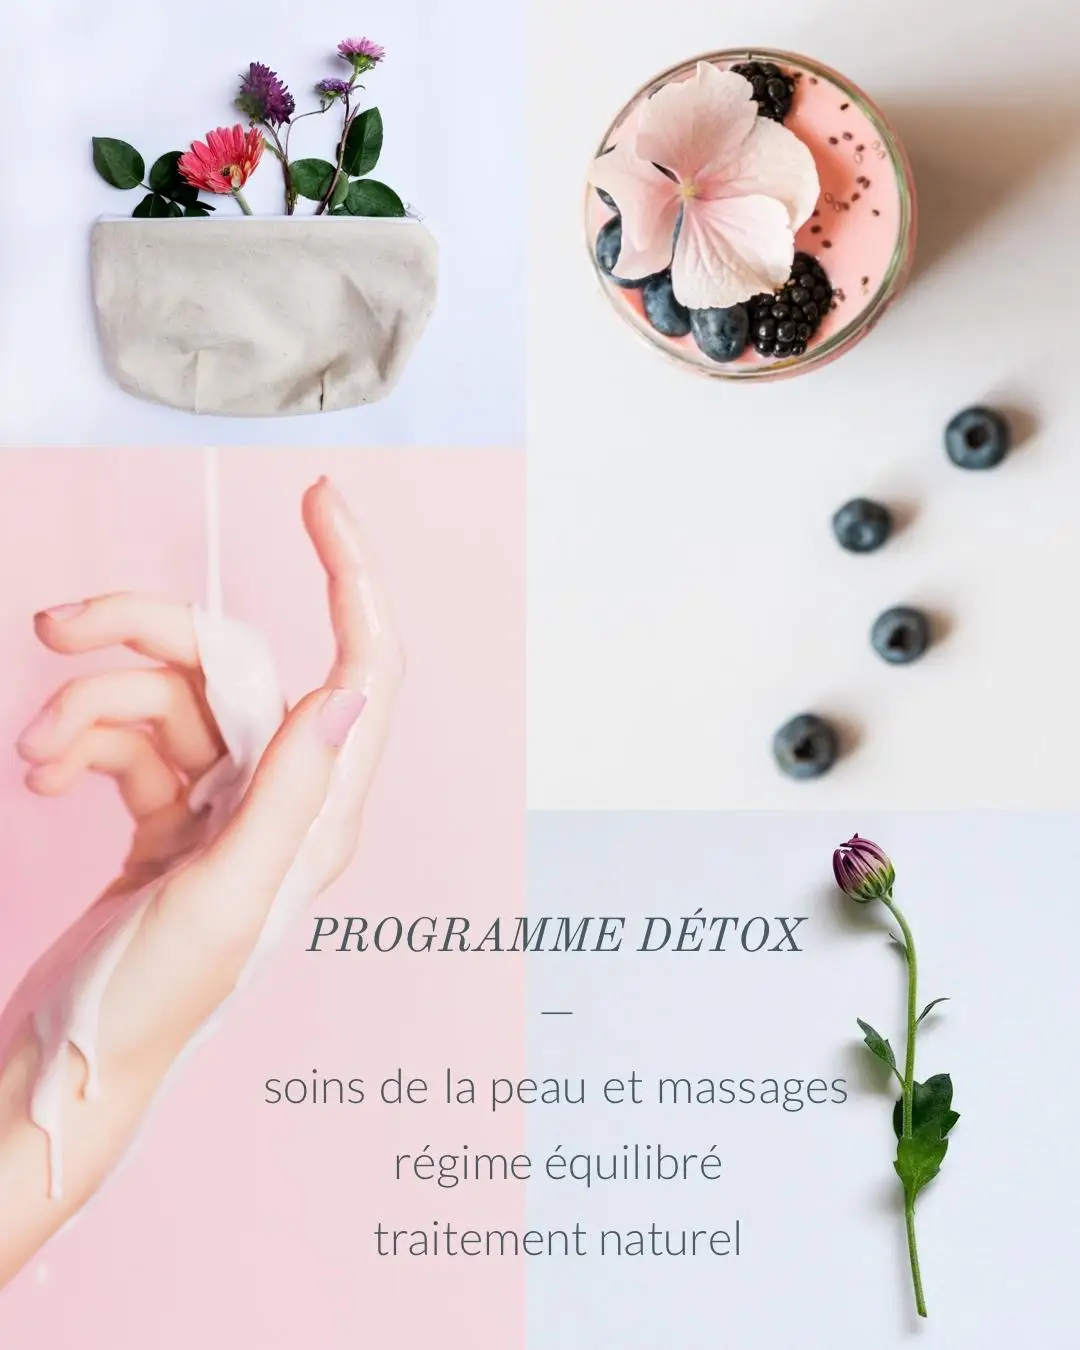 Soft tones flowers and fruits detox program Instagram portrait